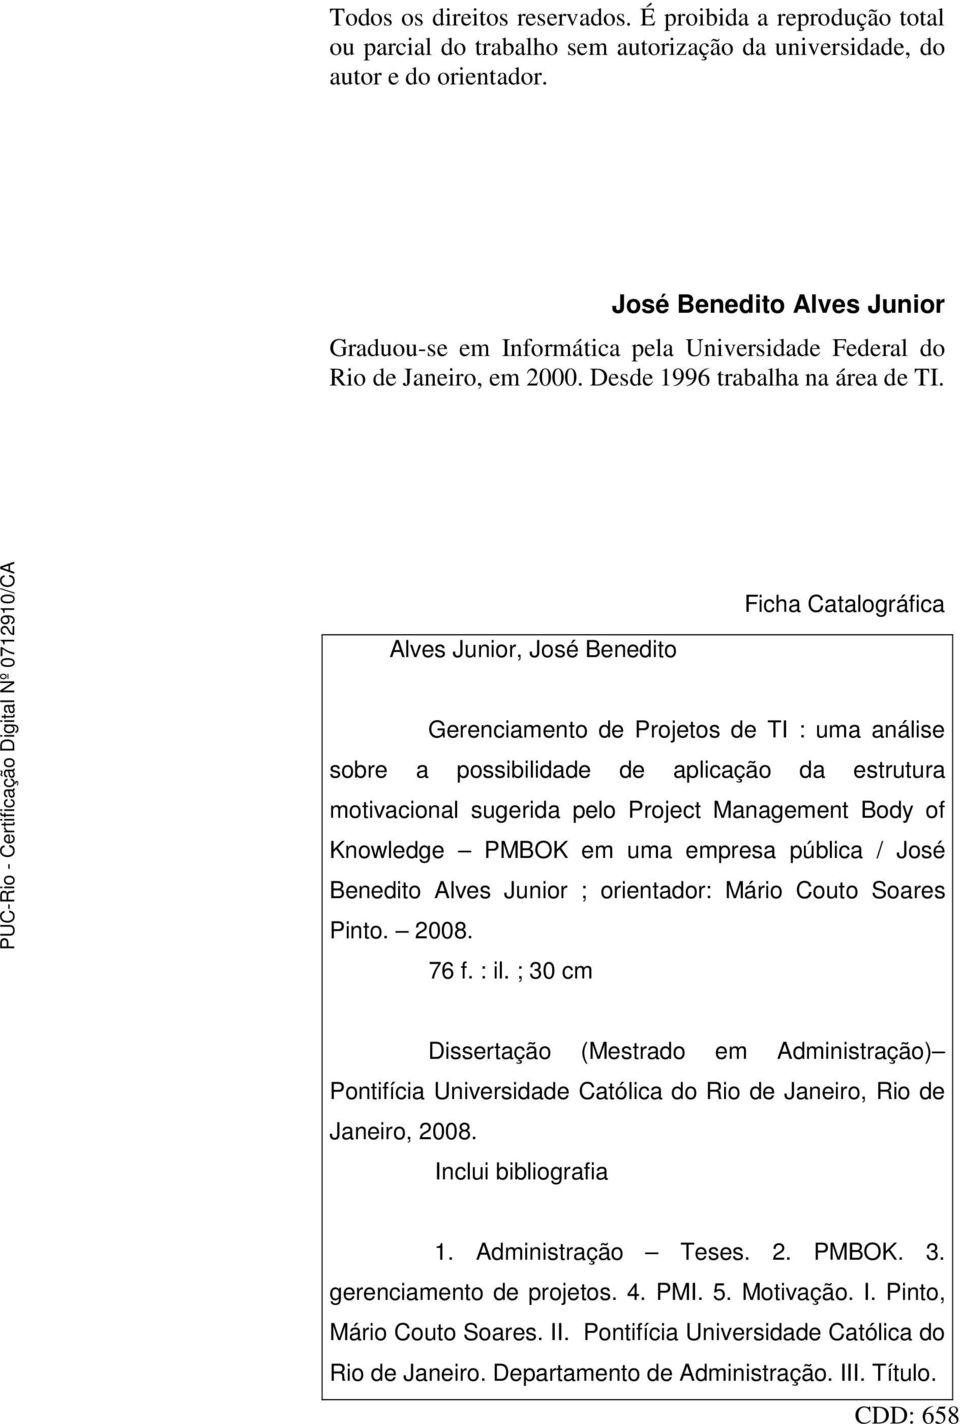 Alves Junior, José Benedito Ficha Catalográfica Gerenciamento de Projetos de TI : uma análise sobre a possibilidade de aplicação da estrutura motivacional sugerida pelo Project Management Body of